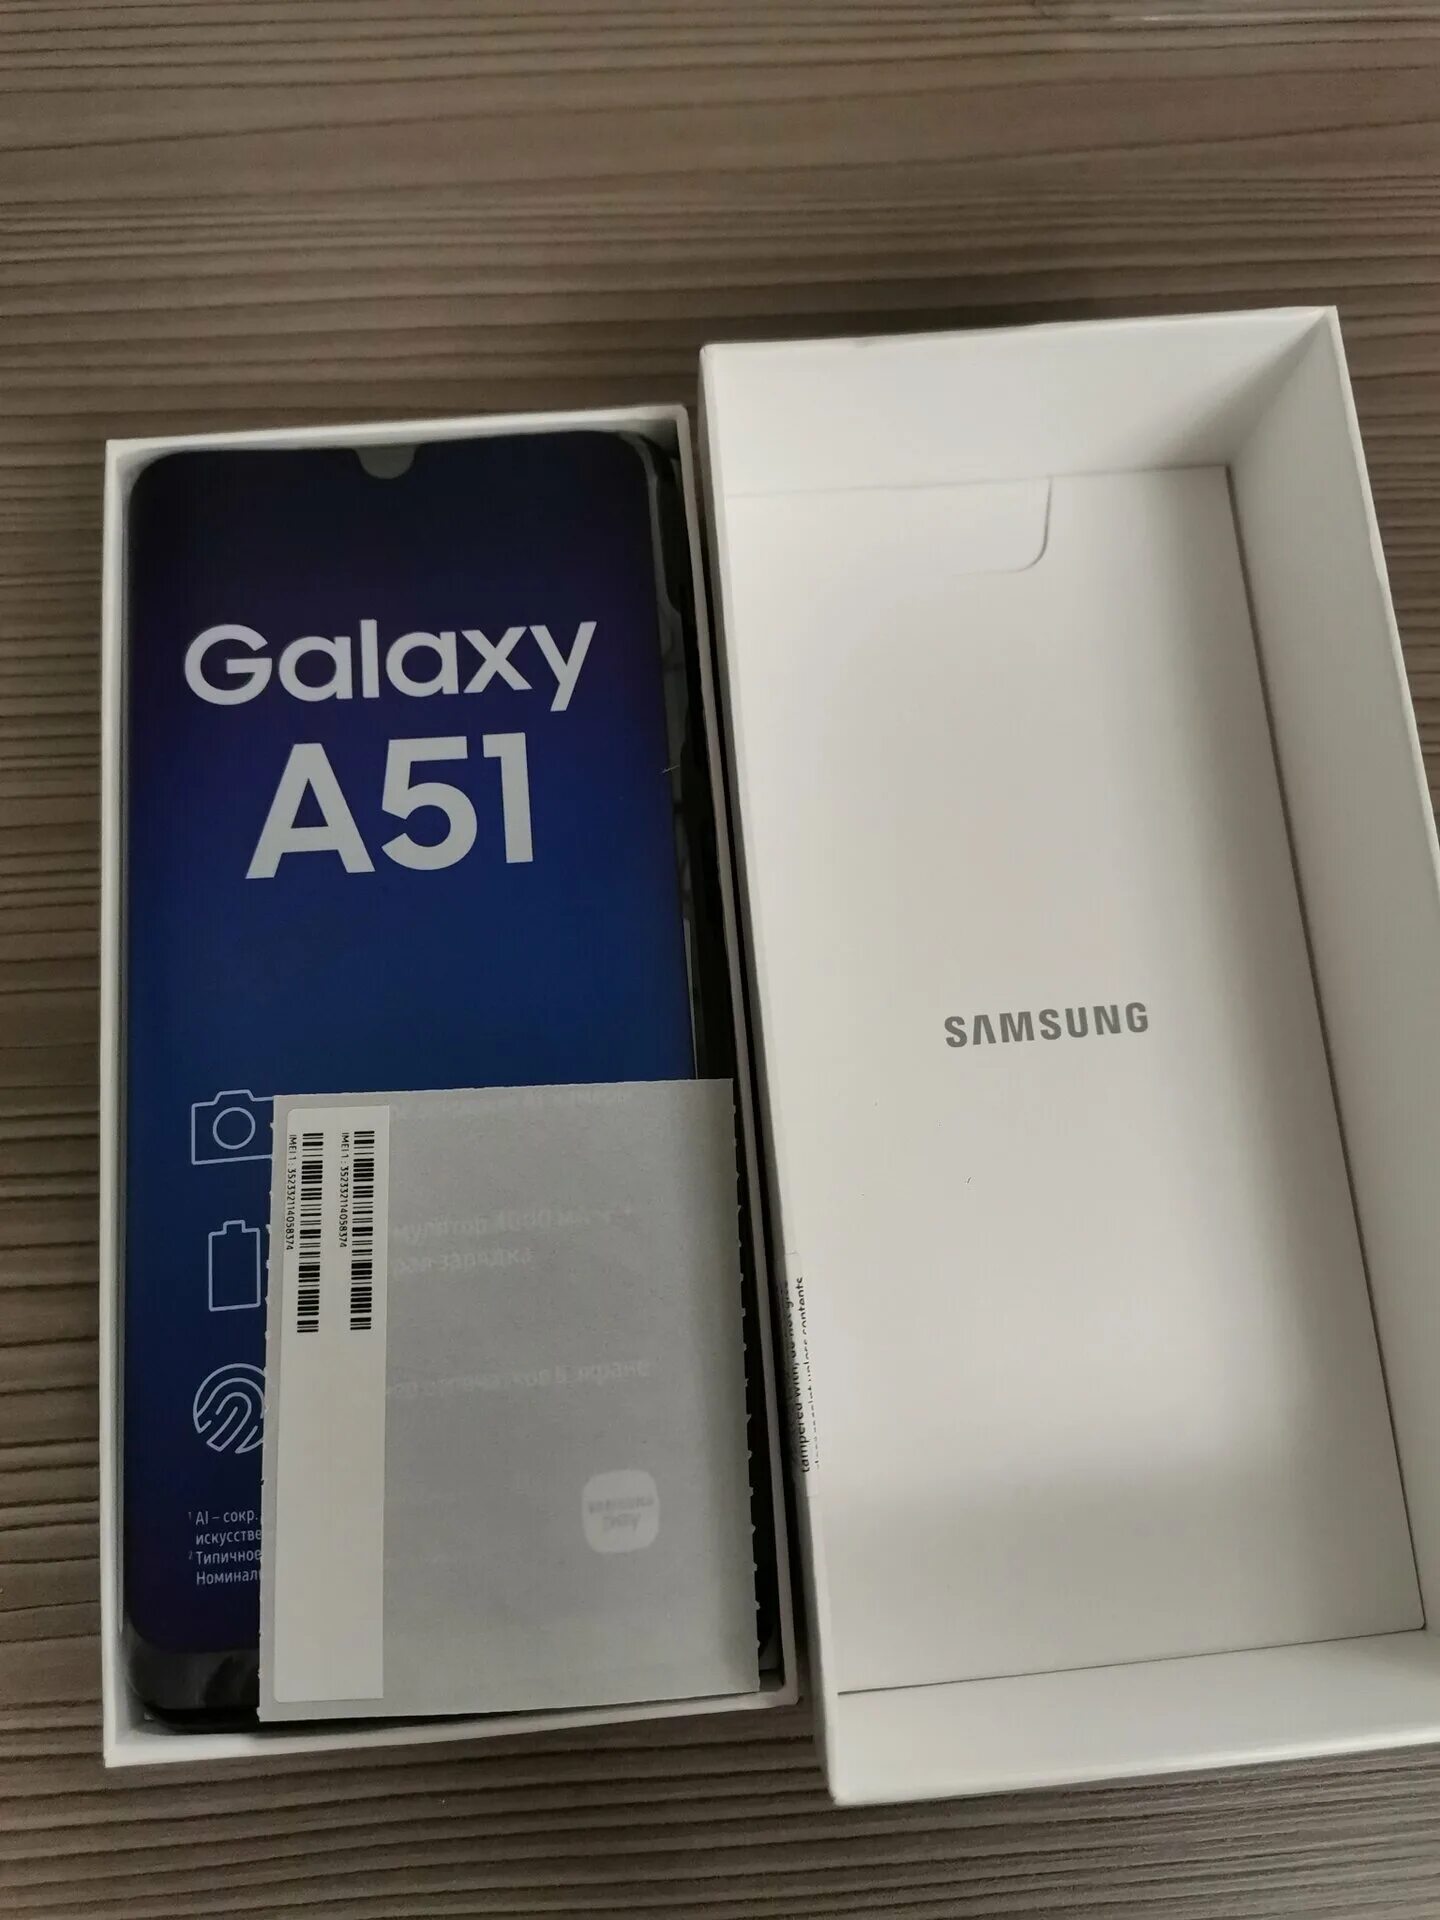 Самсунг а 51 128 гб. Samsung Galaxy a51 6/128gb. Samsung Galaxy a51 64gb. Samsung Galaxy a51 128gb Black. Samsung Galaxy a51 128gb White.